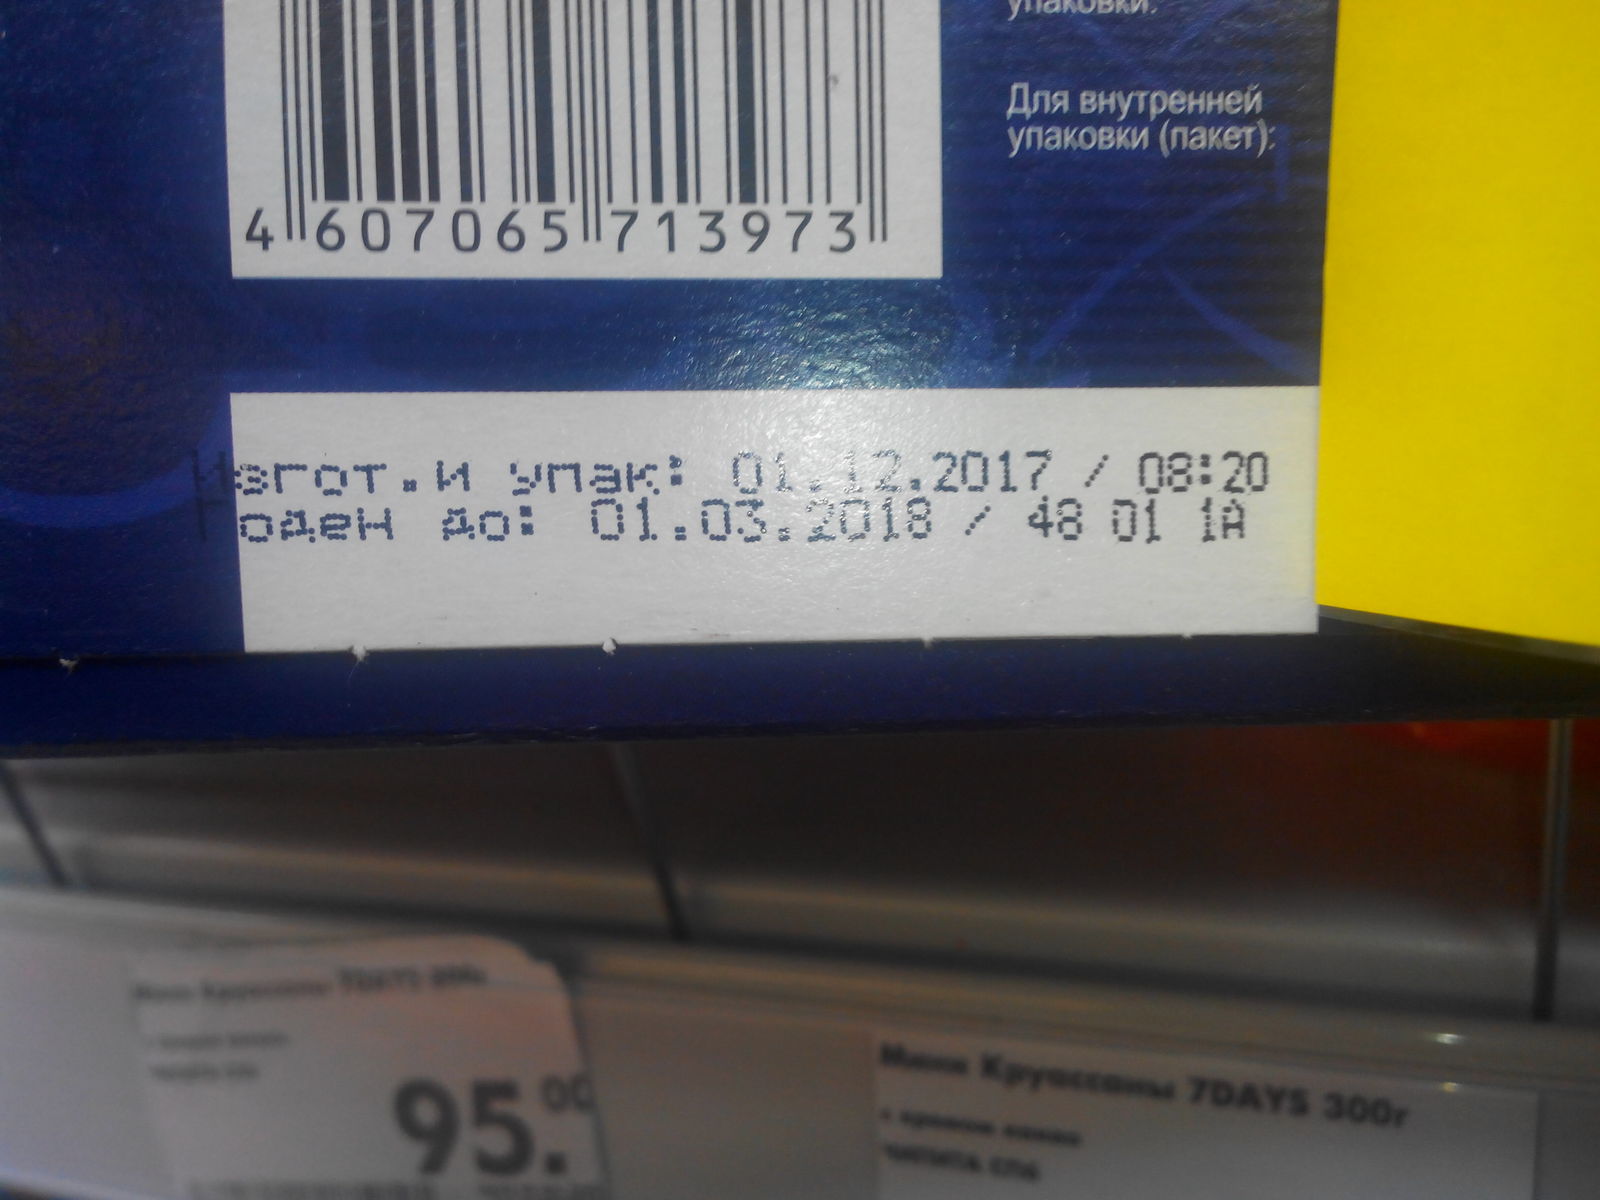 How Pyaterochka deals with expired goods. - My, Trade, Pyaterochka, Delay, Deception